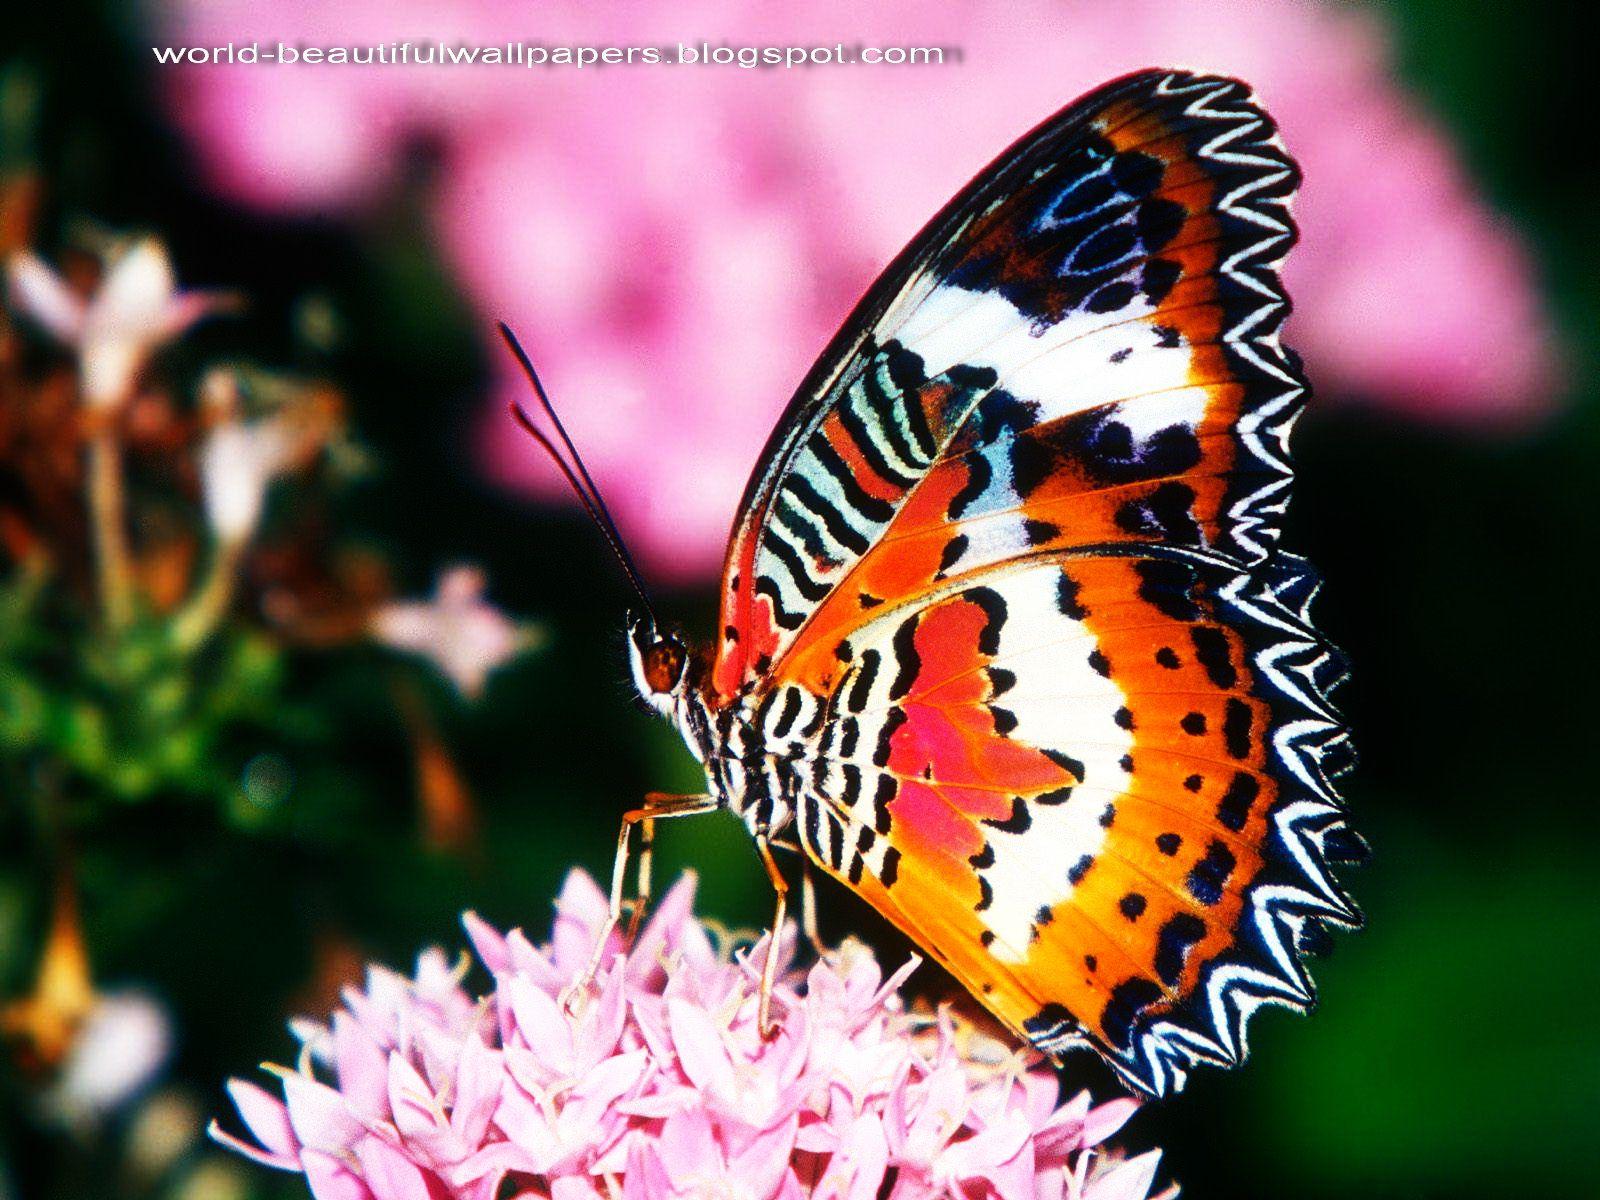 1600 x 1200 · jpeg - Beautiful Butterflies Wallpaper | Beautiful butterflies wallpaper ...